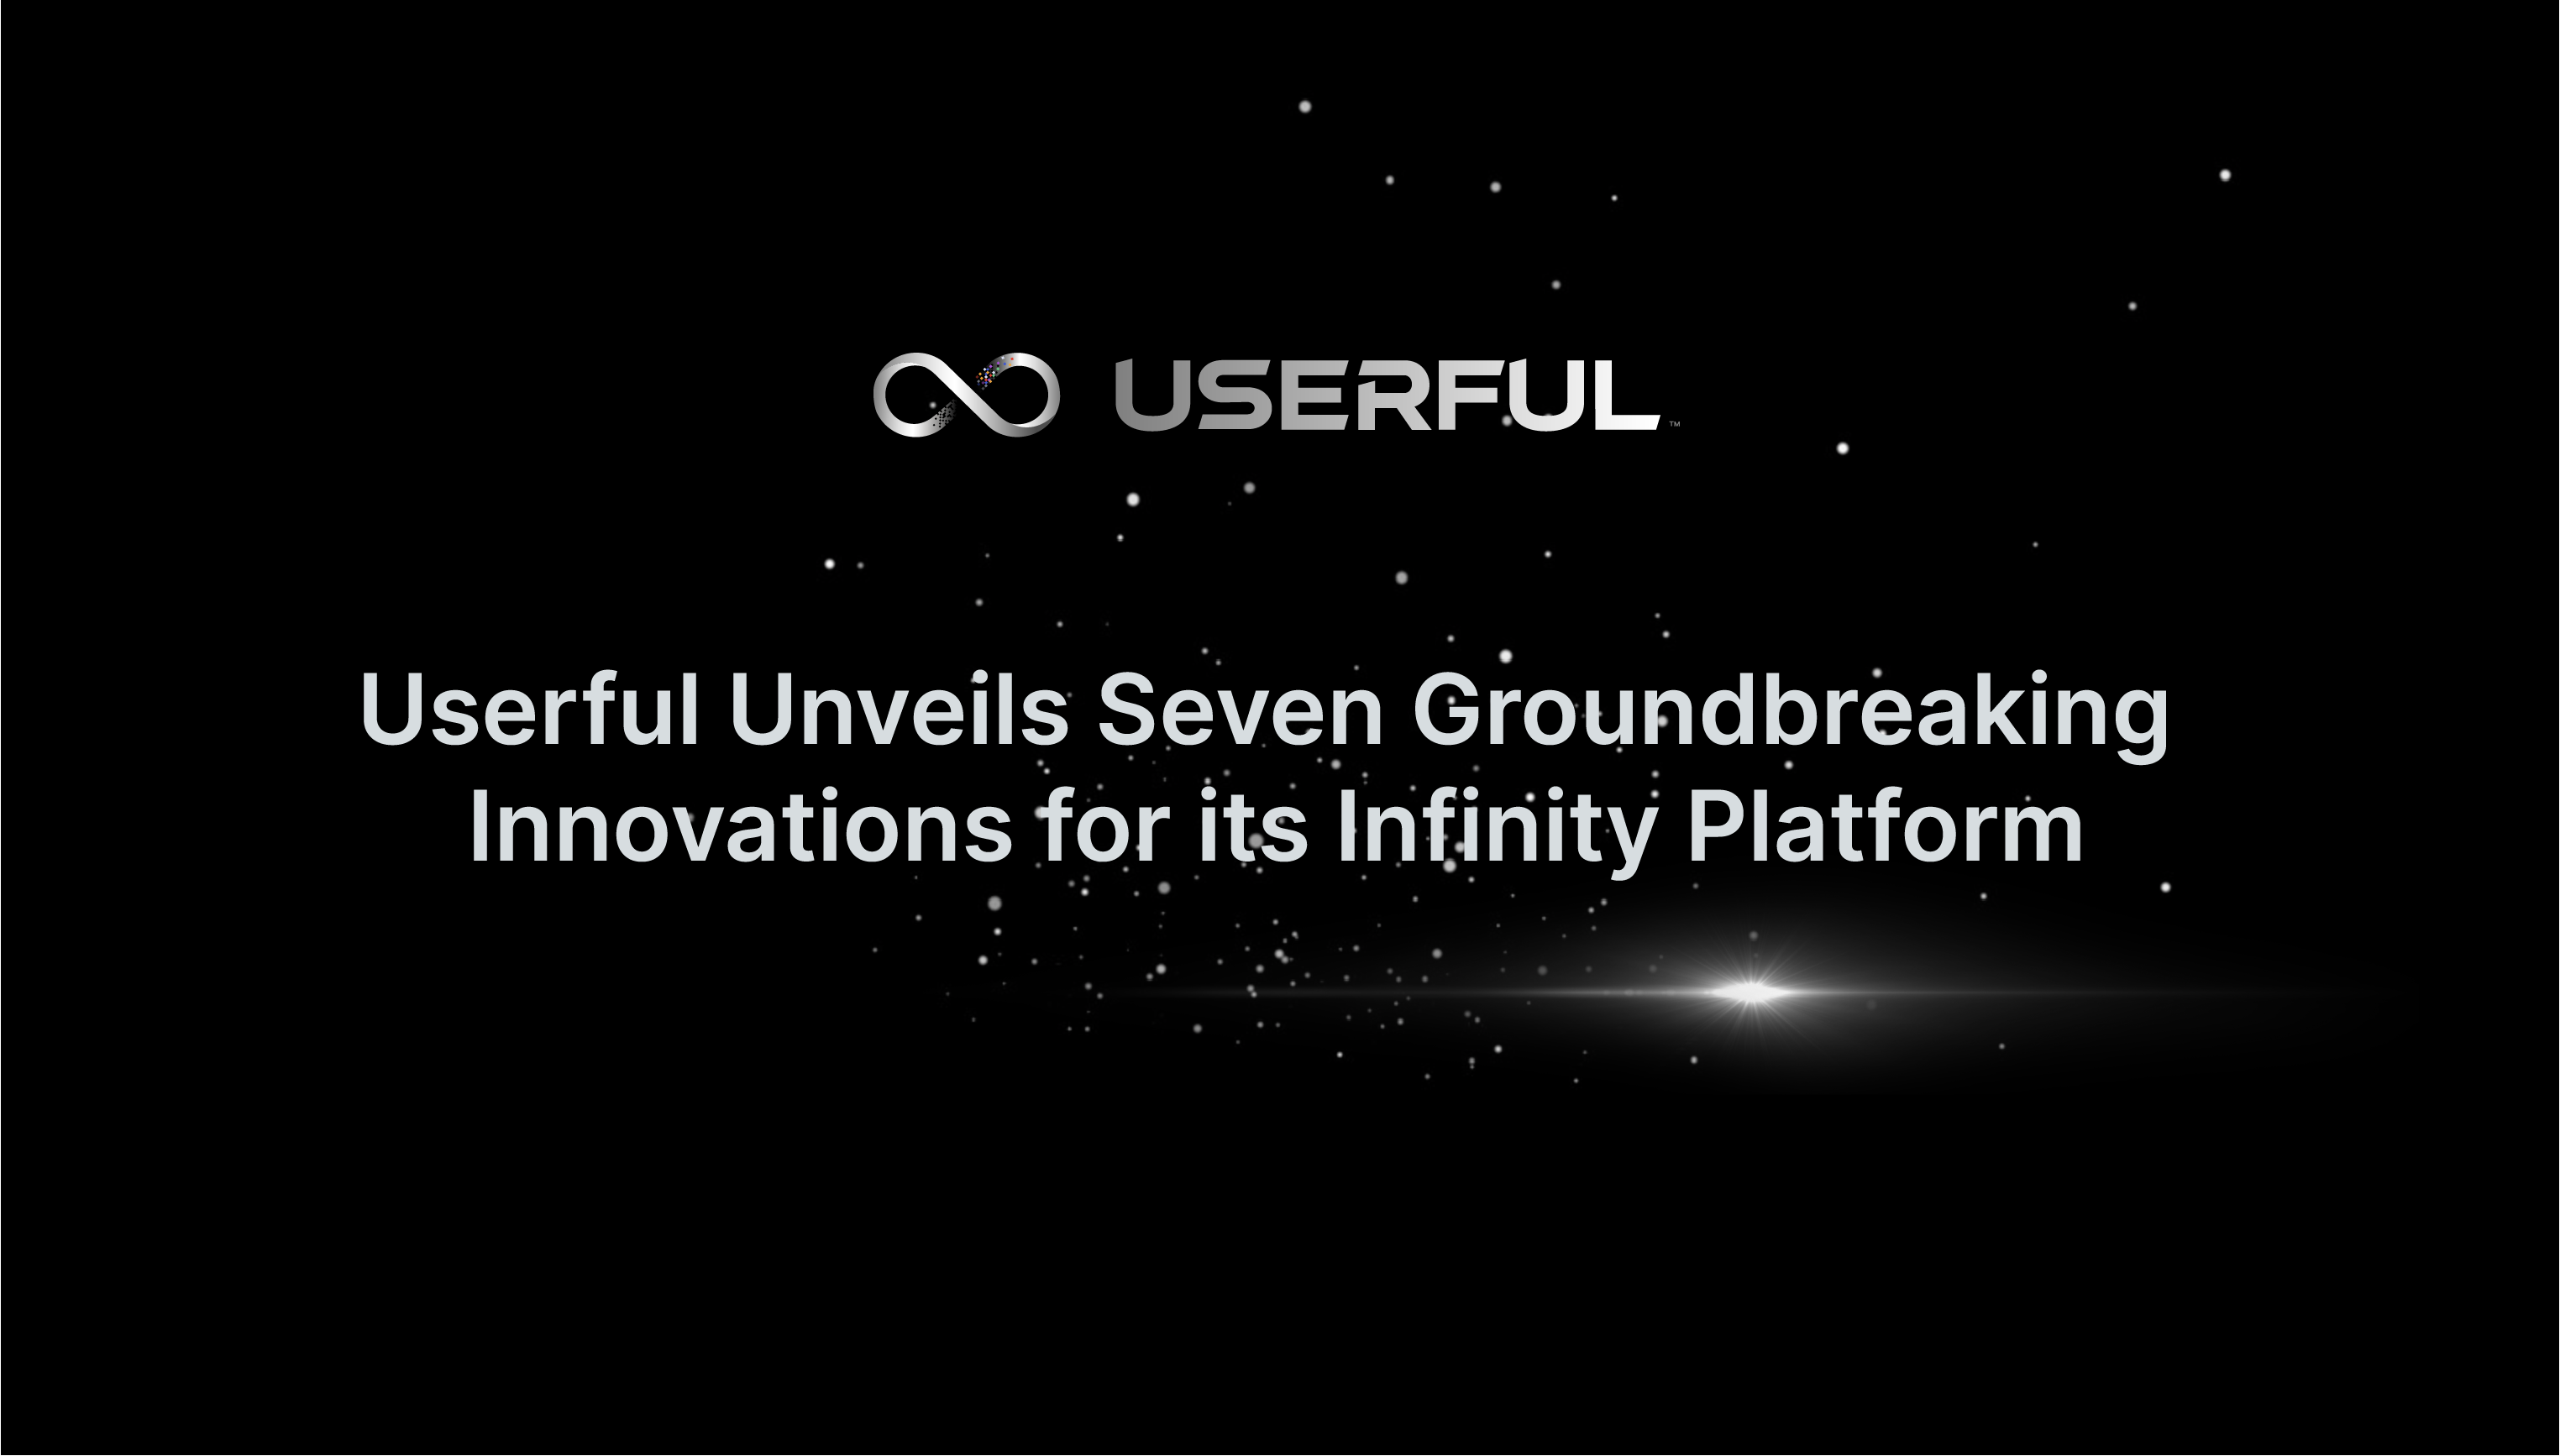 Userful dévoile sept innovations révolutionnaires pour sa plate-forme Infinity, renforçant ainsi son leadership dans le domaine de l'audiovisuel d'entreprise sur IP. 